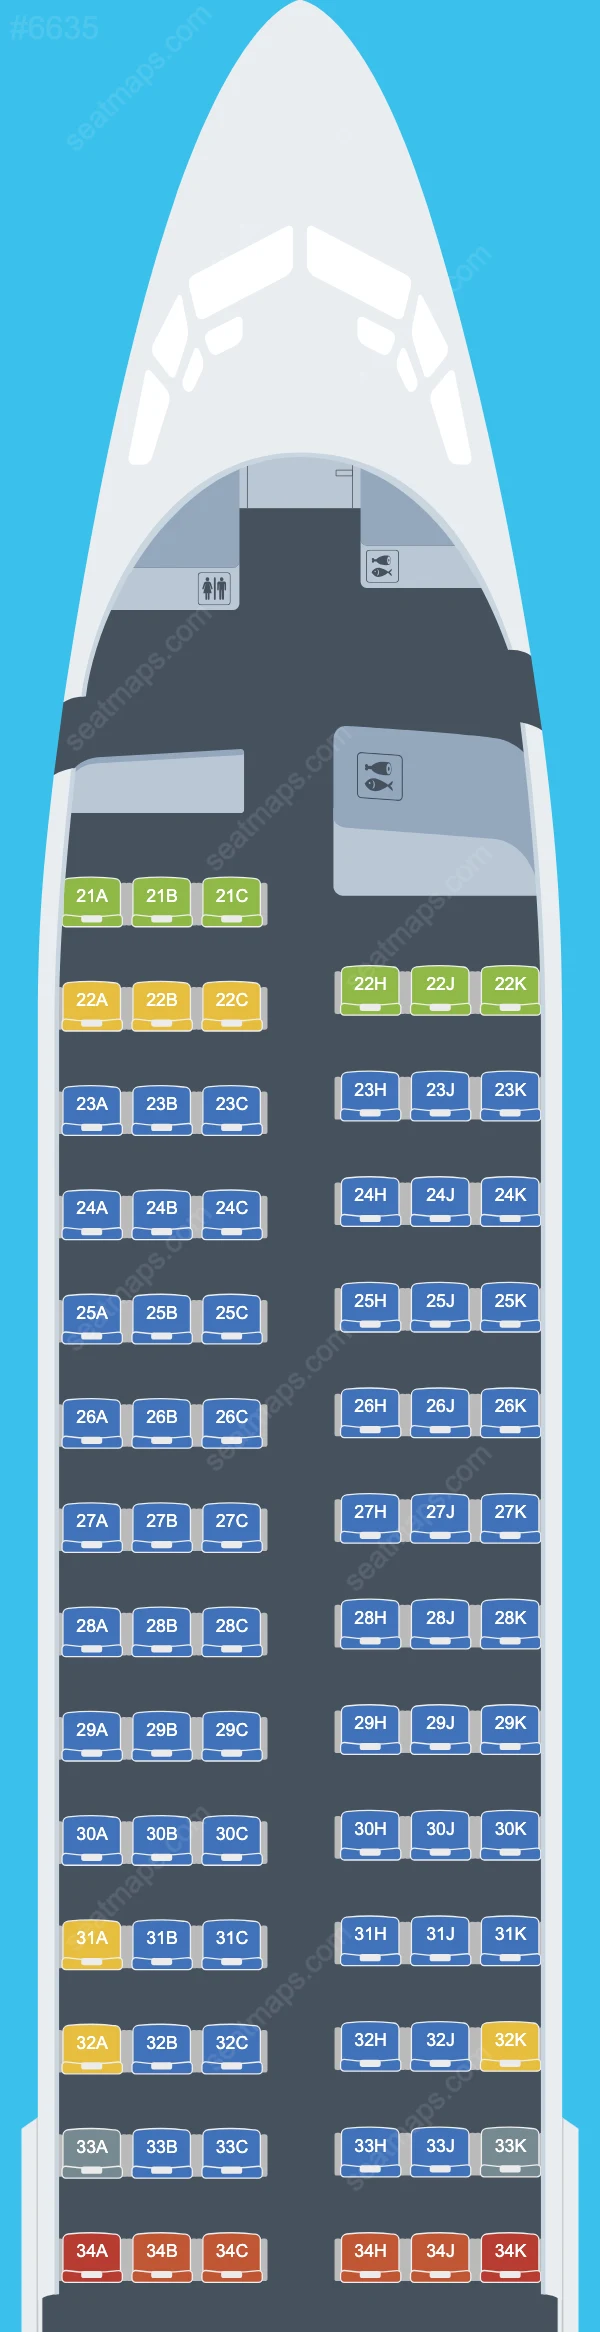 El Al Boeing 737-800 aircraft seat map  737-800 V.2